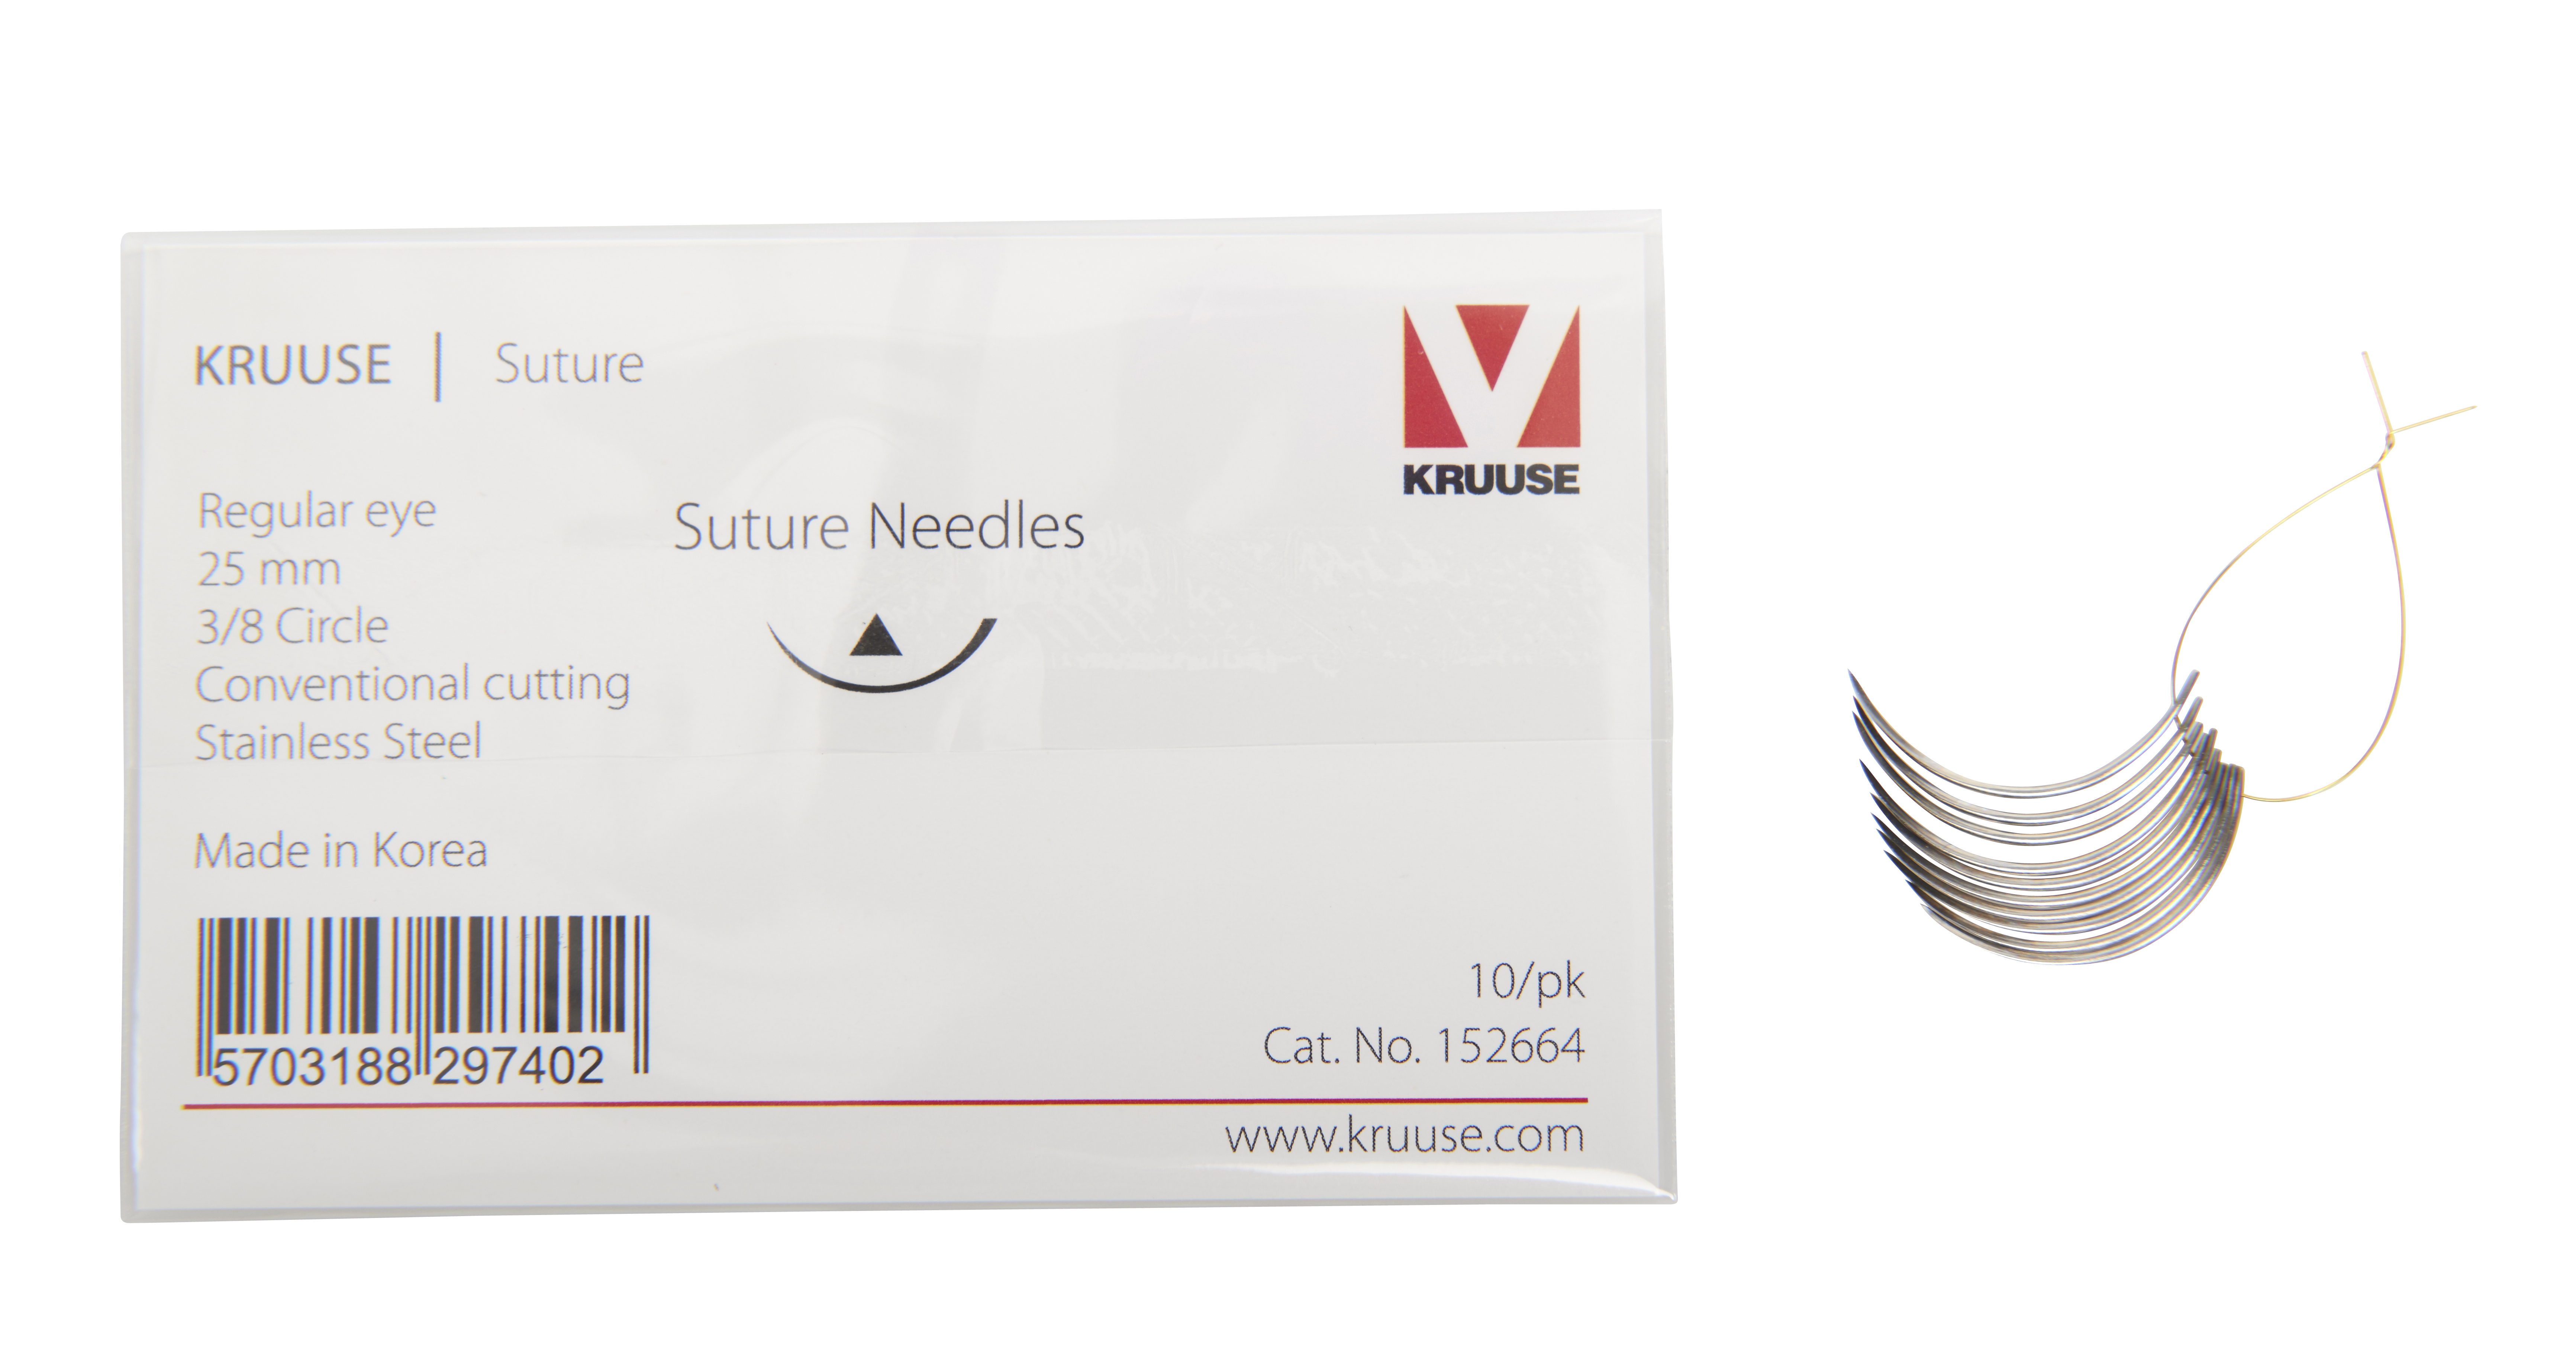 KRUUSE suture needle, regular eye, 3/8 circle, conventional cutting, 25 mm, 10/pk